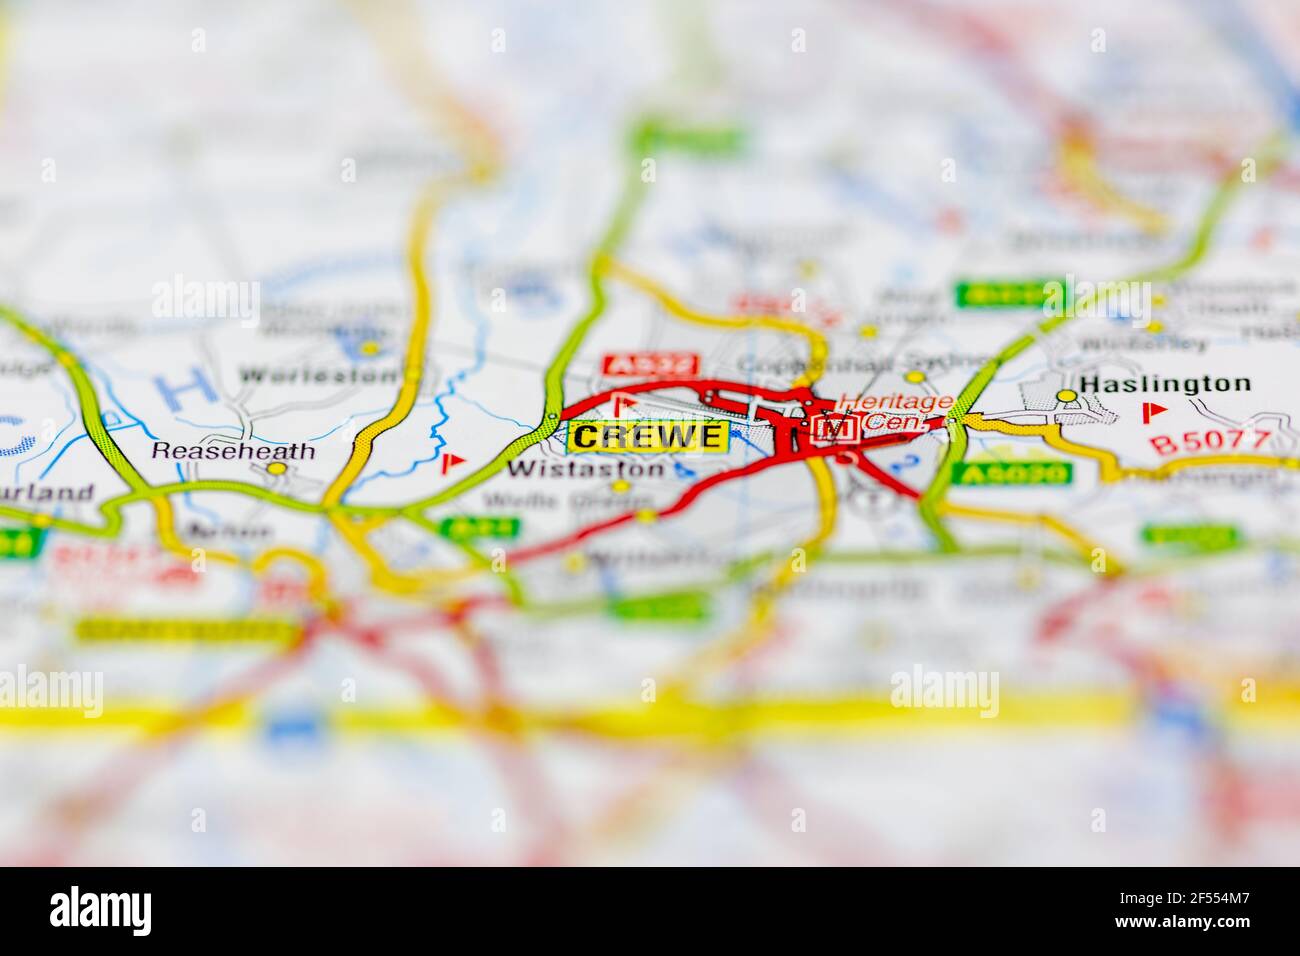 Crewe se muestra en un mapa geográfico o mapa de carreteras Foto de stock